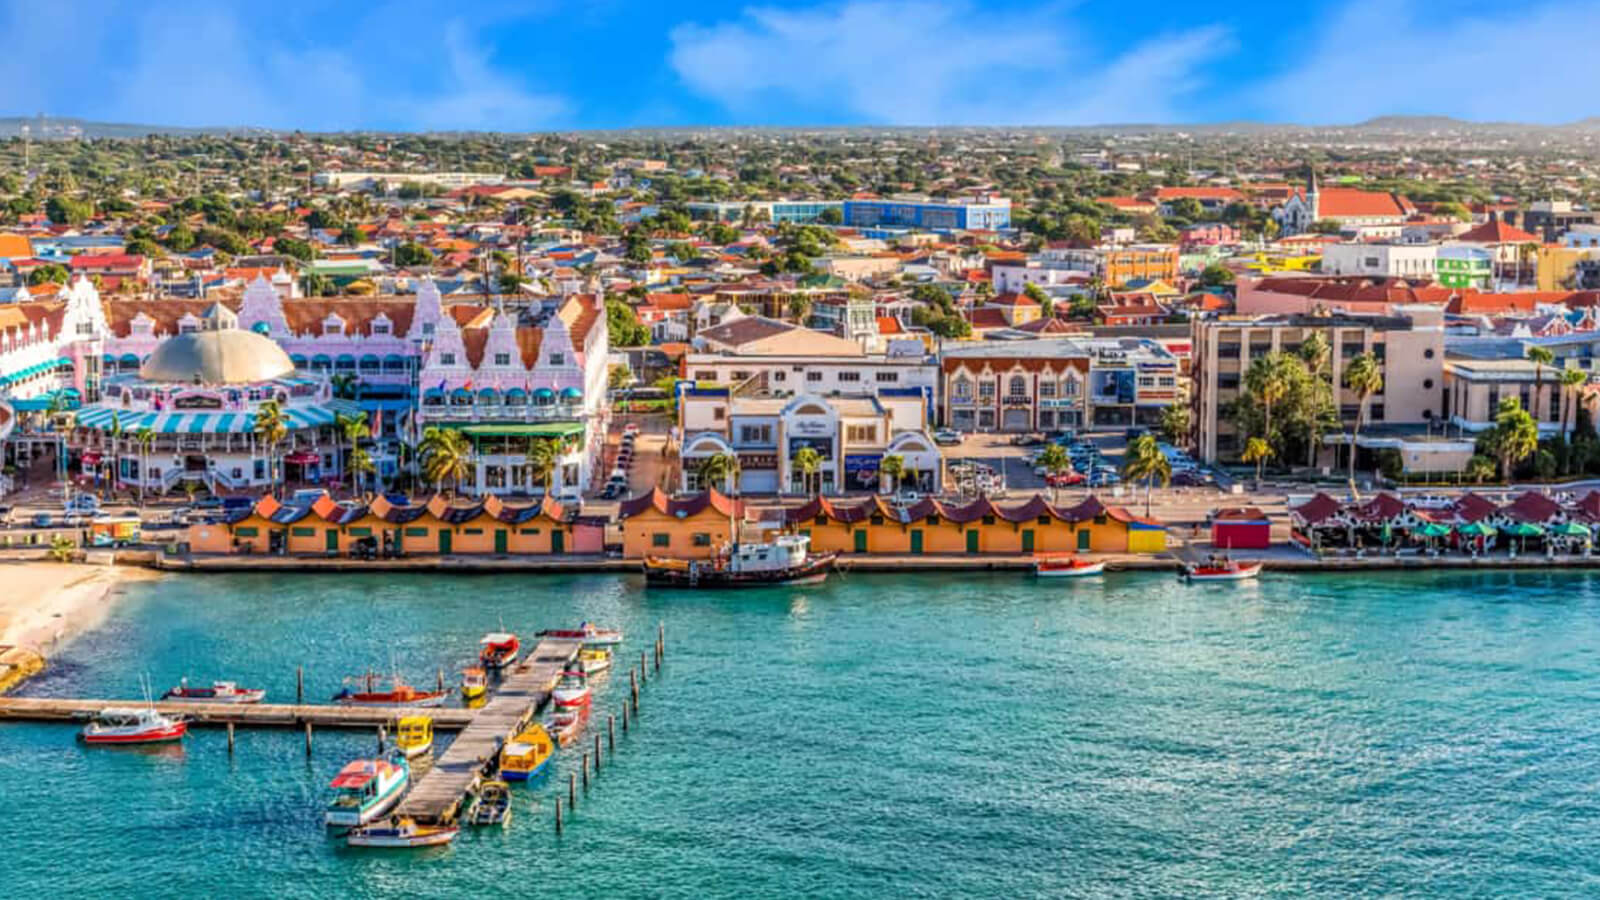 Image of Oranjestad, Aruba